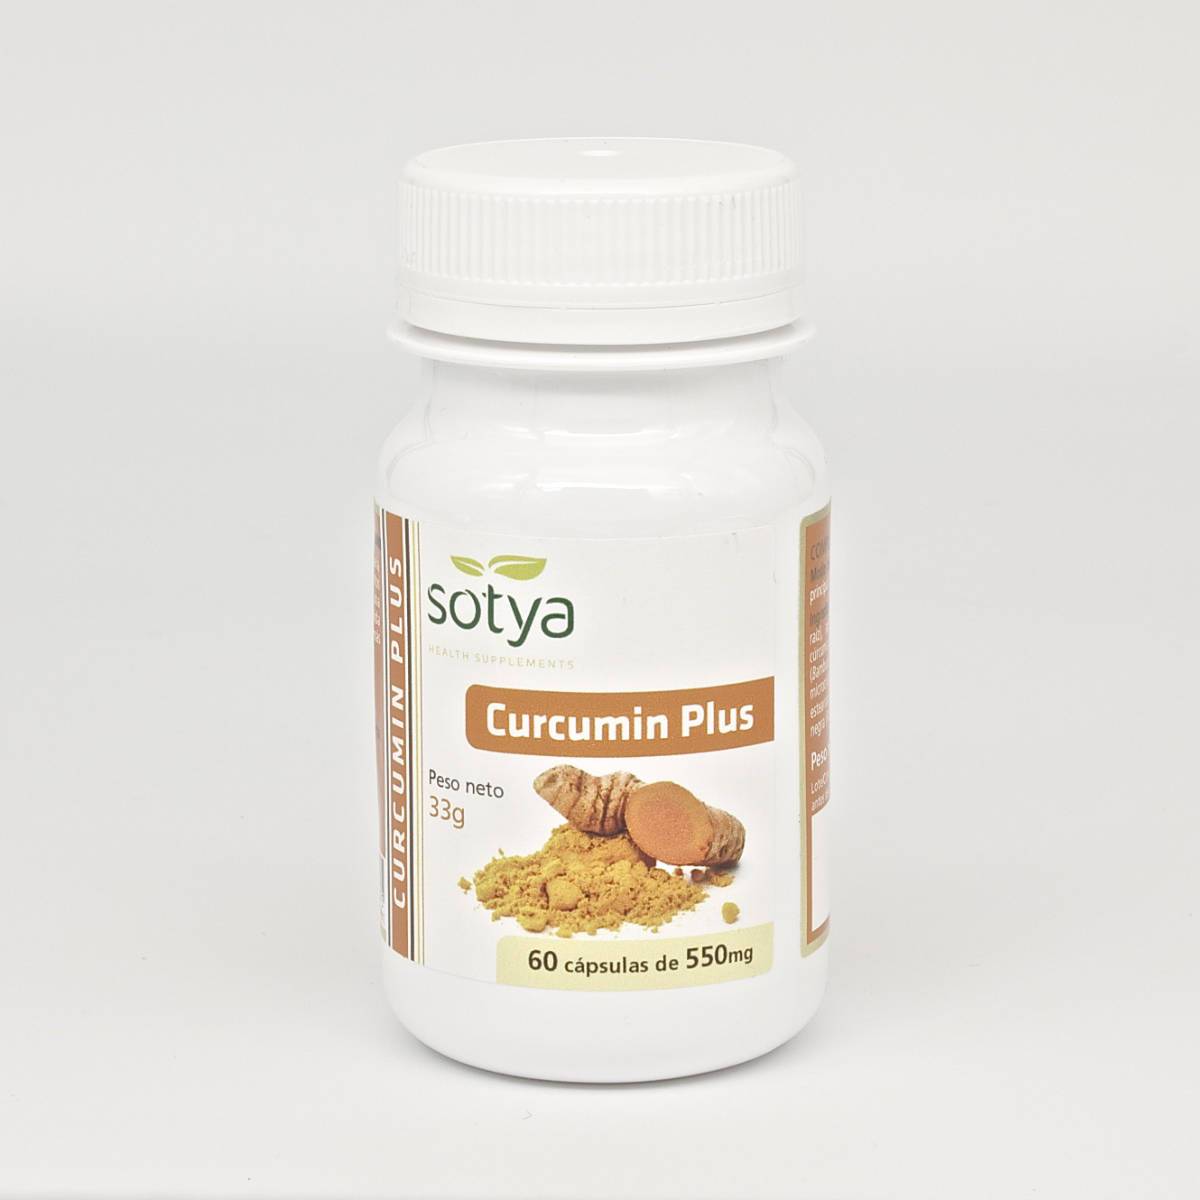 Curcumin Plus 60 Capsulas | Sotya - Dietetica Ferrer